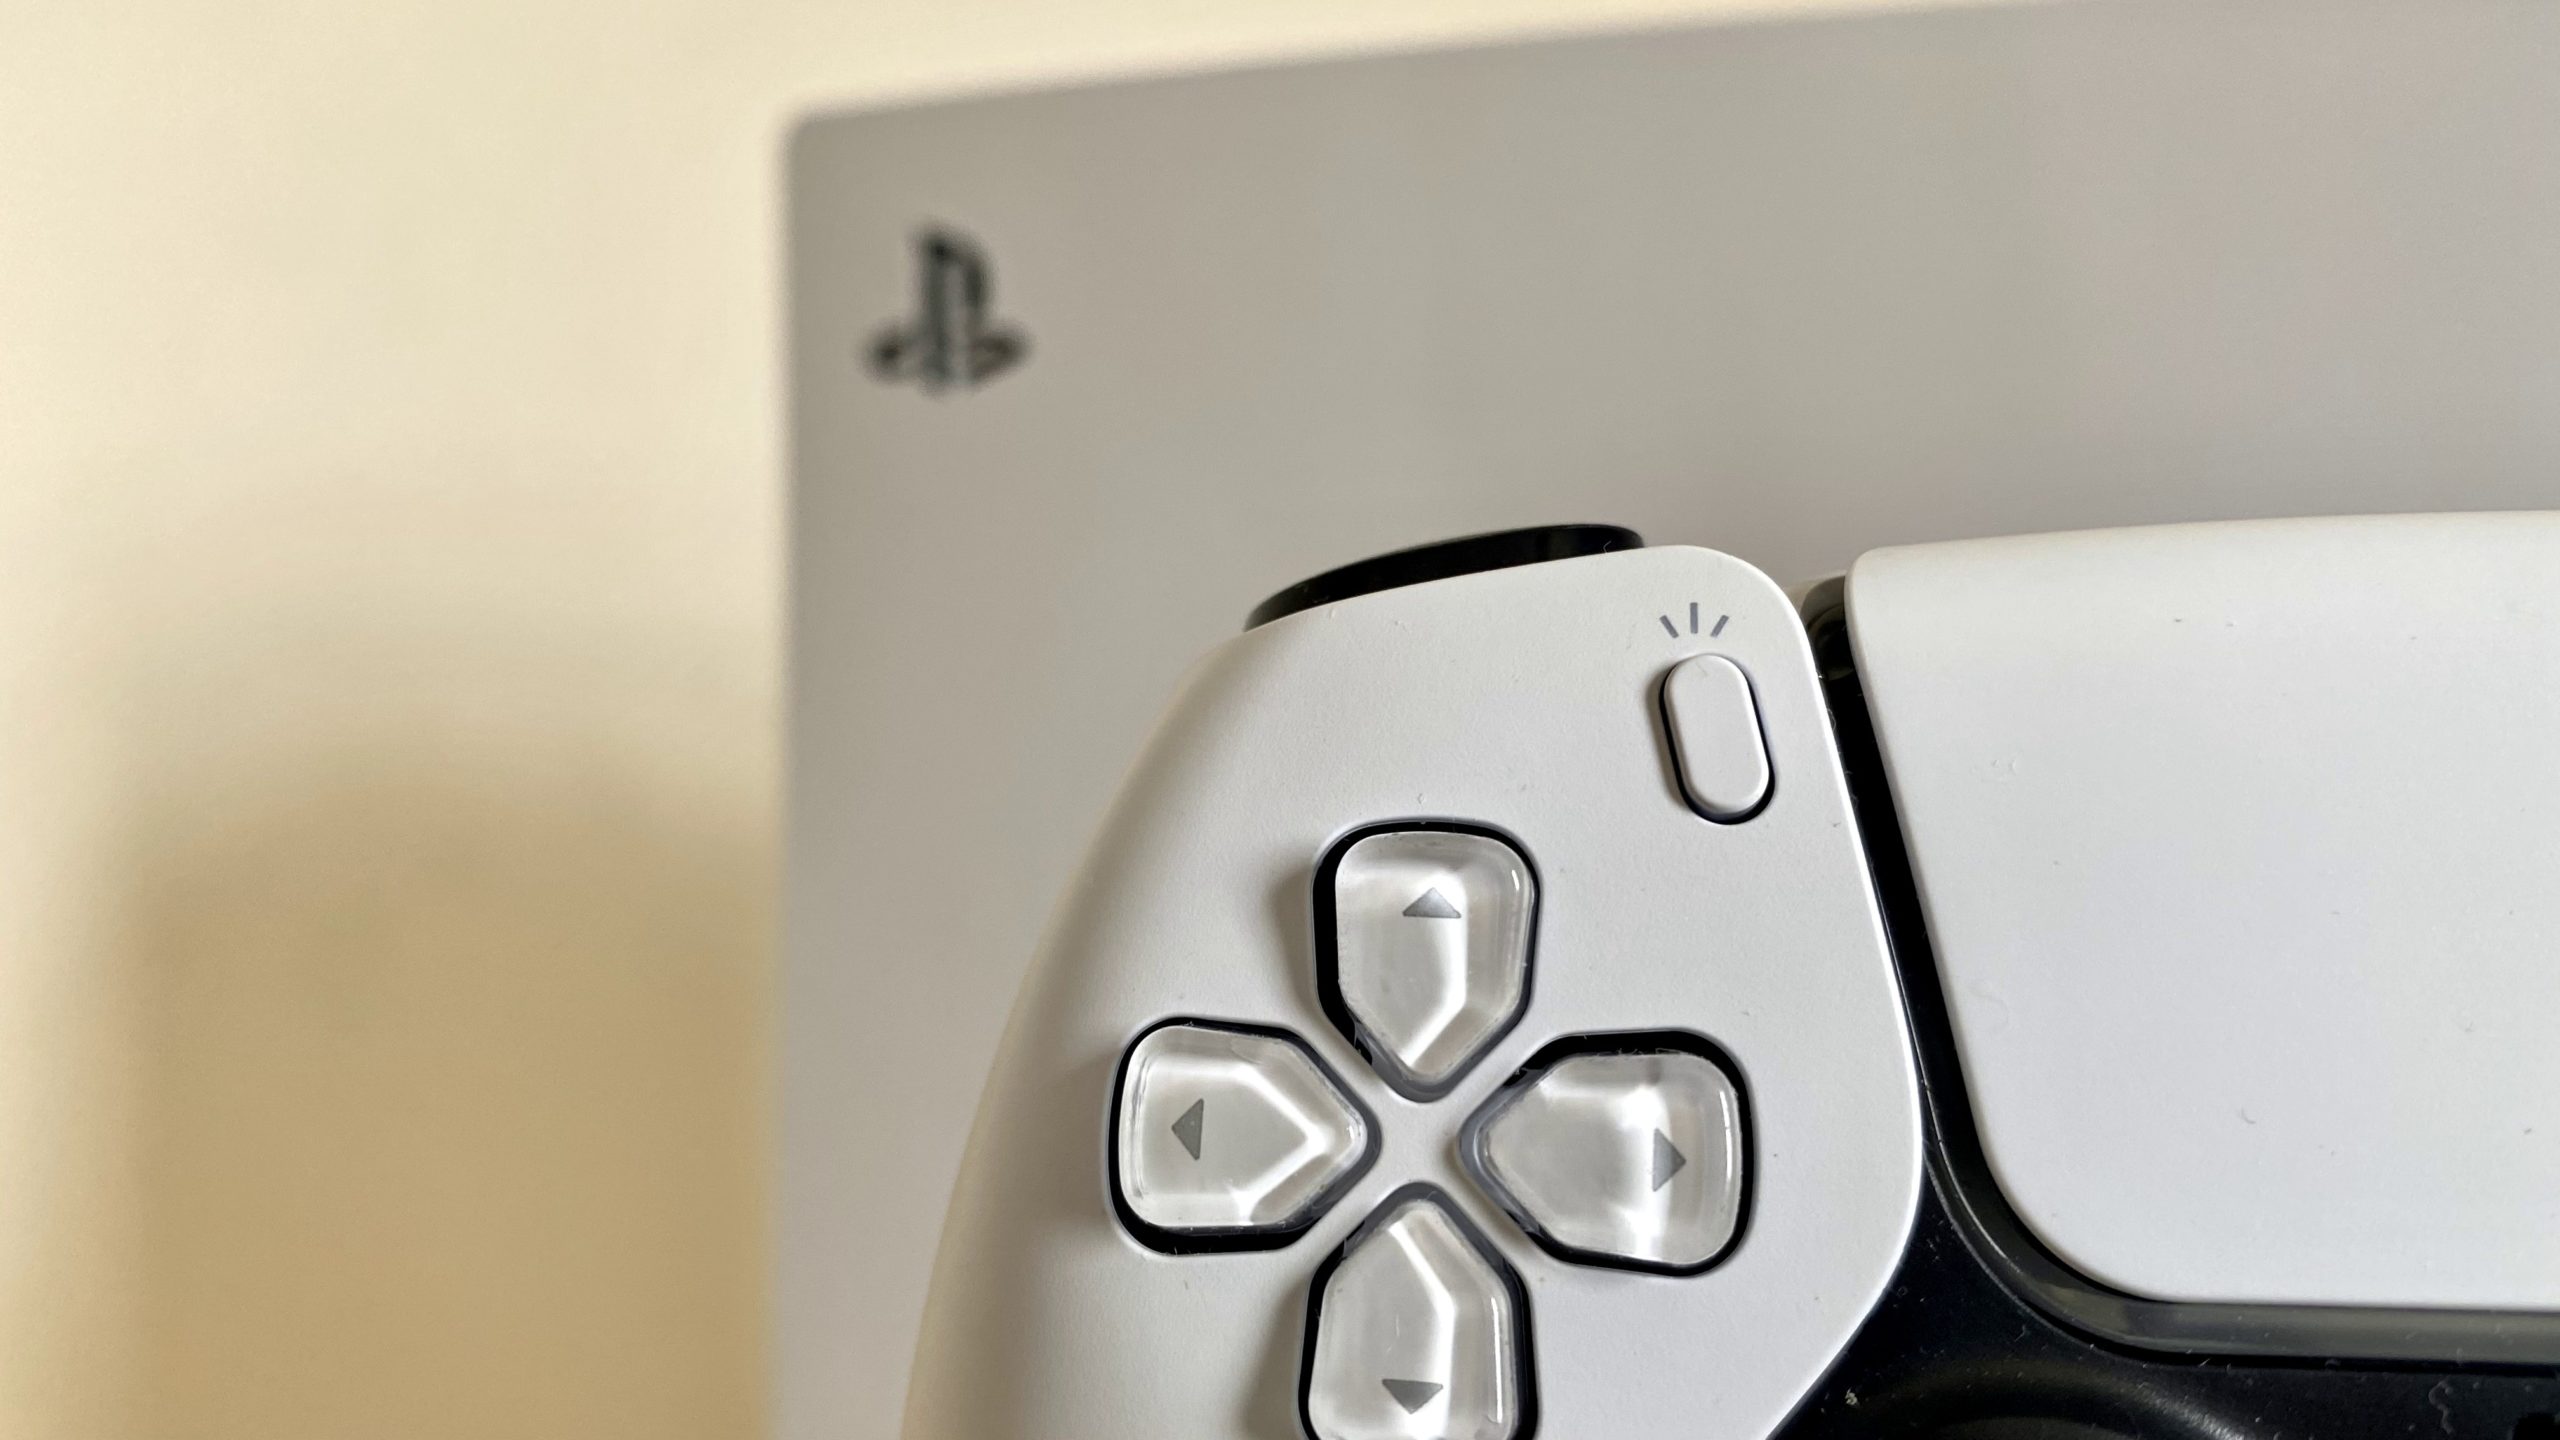 Sony defende sua decisão de aumentar o preço da PS Plus em 35% em